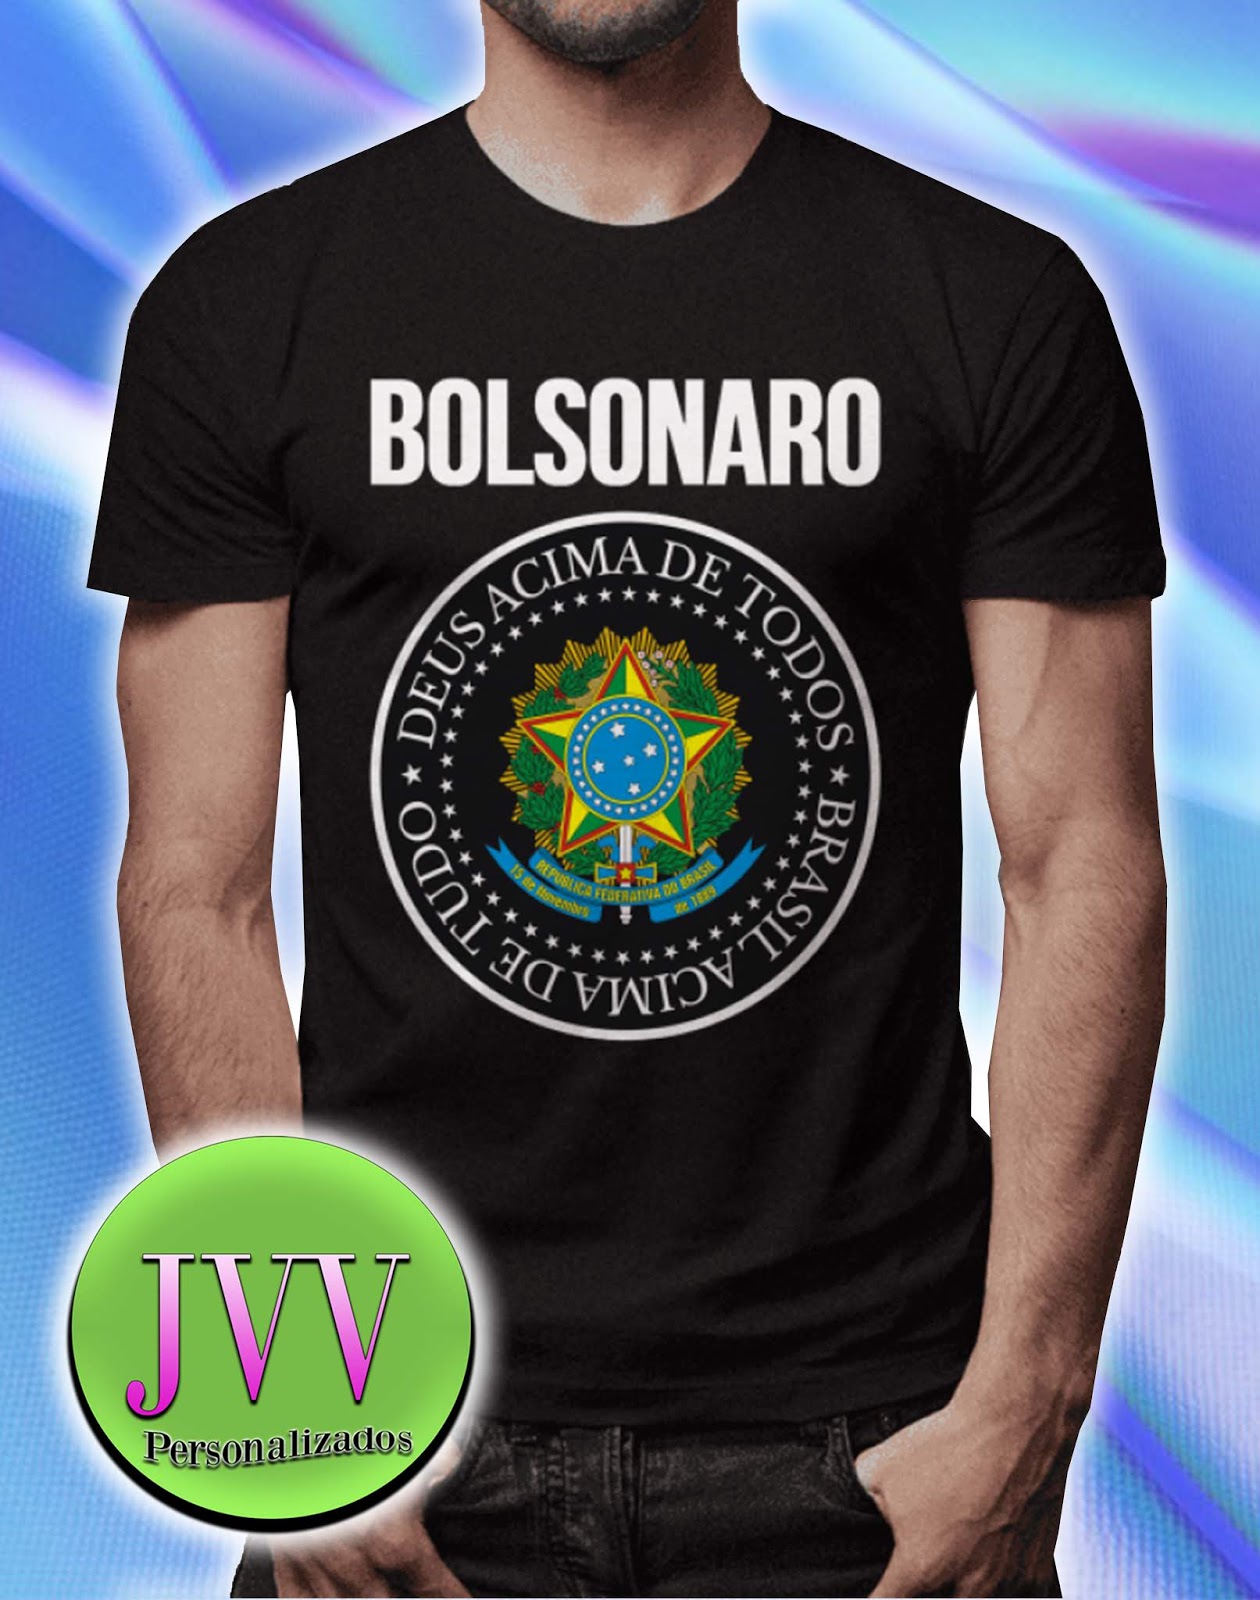 Fisherman width Refrain Camiseta Bolsonaro Deus Acima de Todos Brasil Acima de TudoJvv  Personalizados JVV Personalizados em Barretos